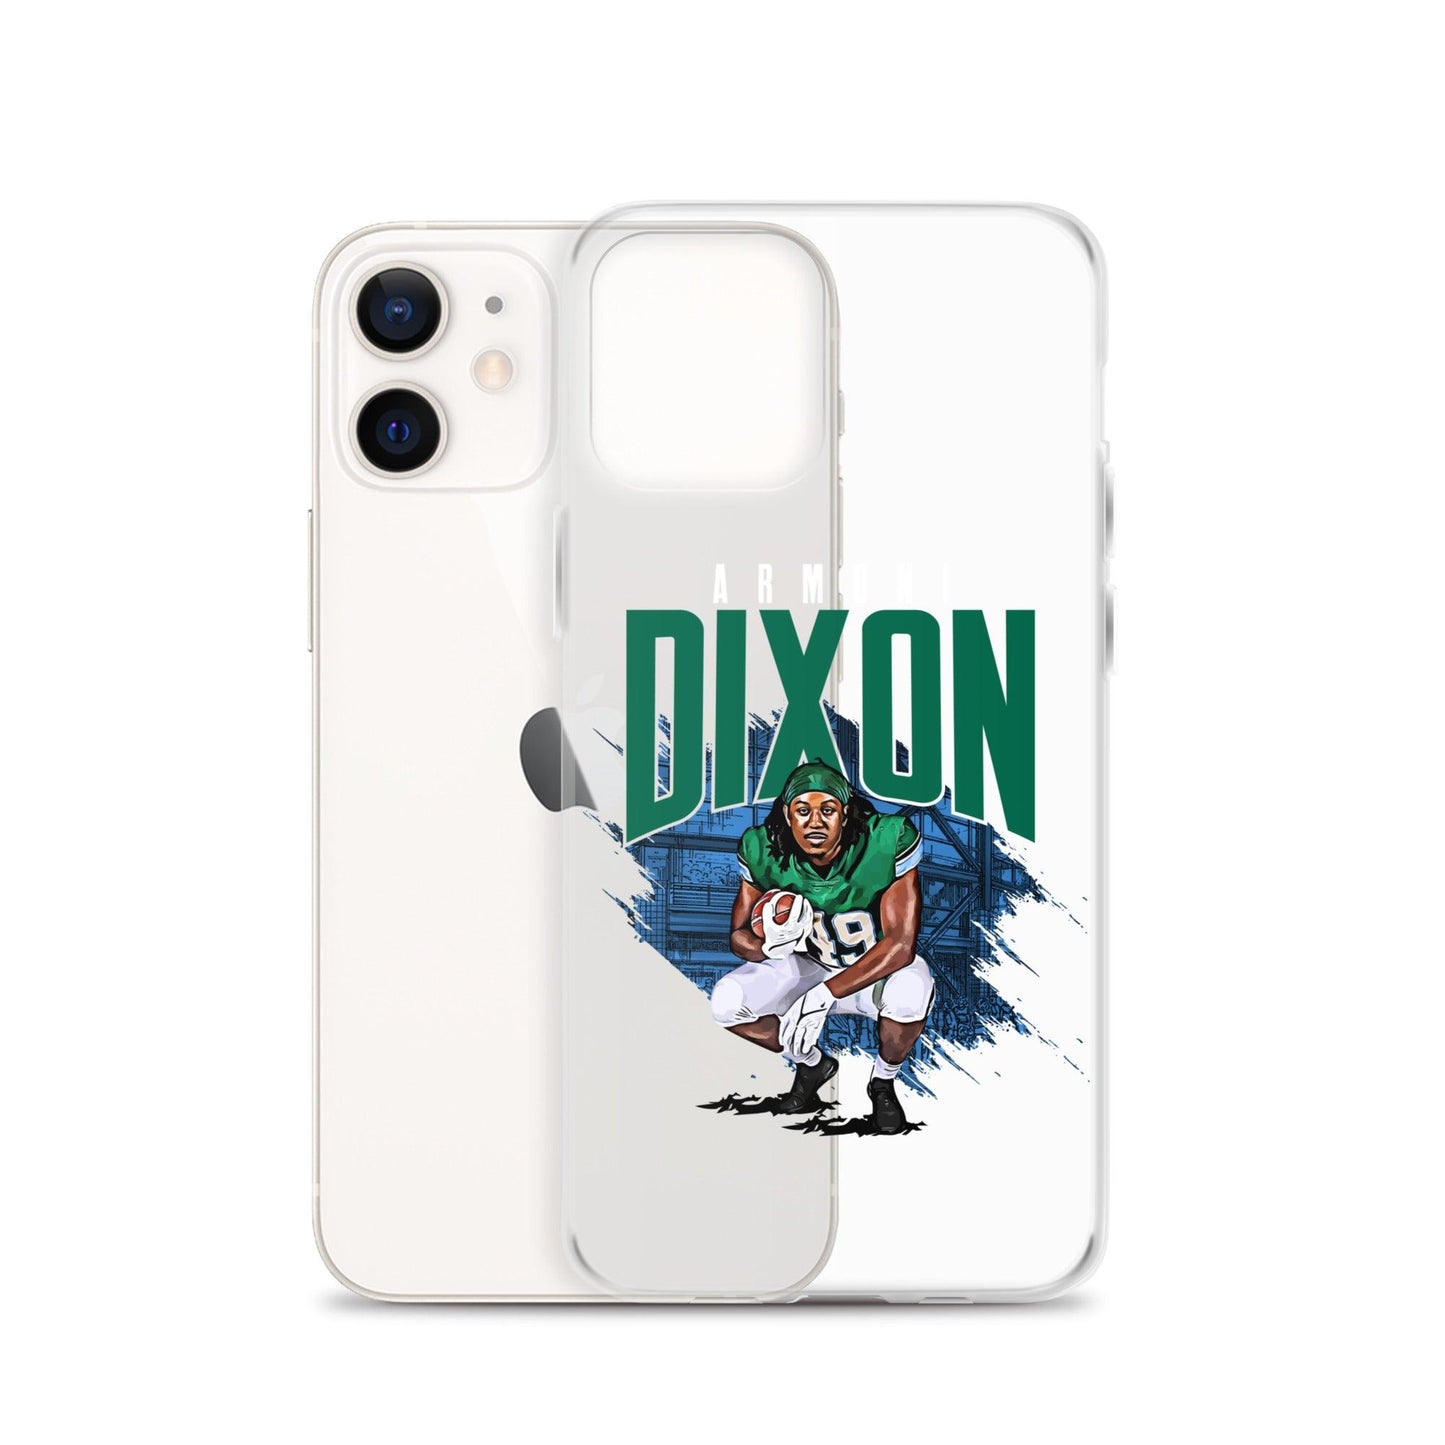 Armoni Dixon "Gametime" iPhone Case - Fan Arch